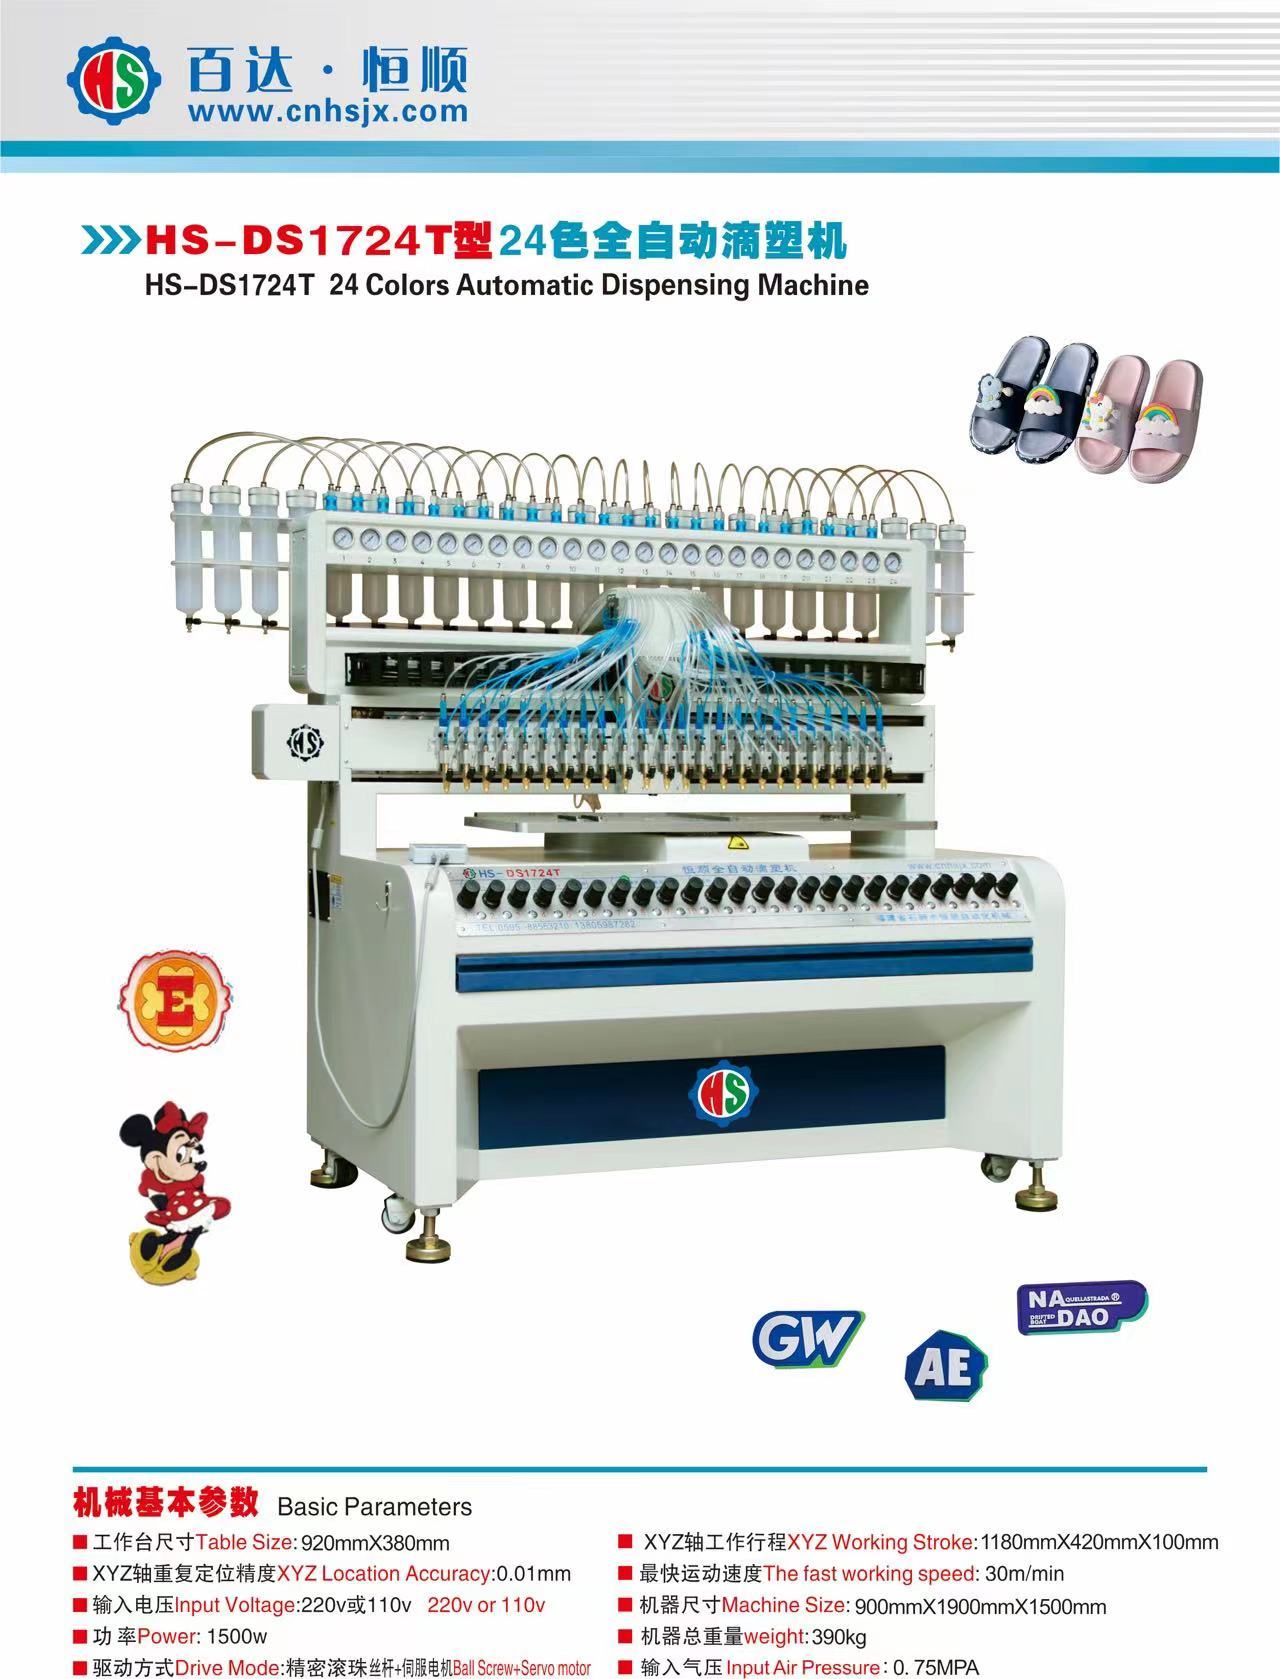 HS-DS1724T 24Colors Automatic Dispensing Machine